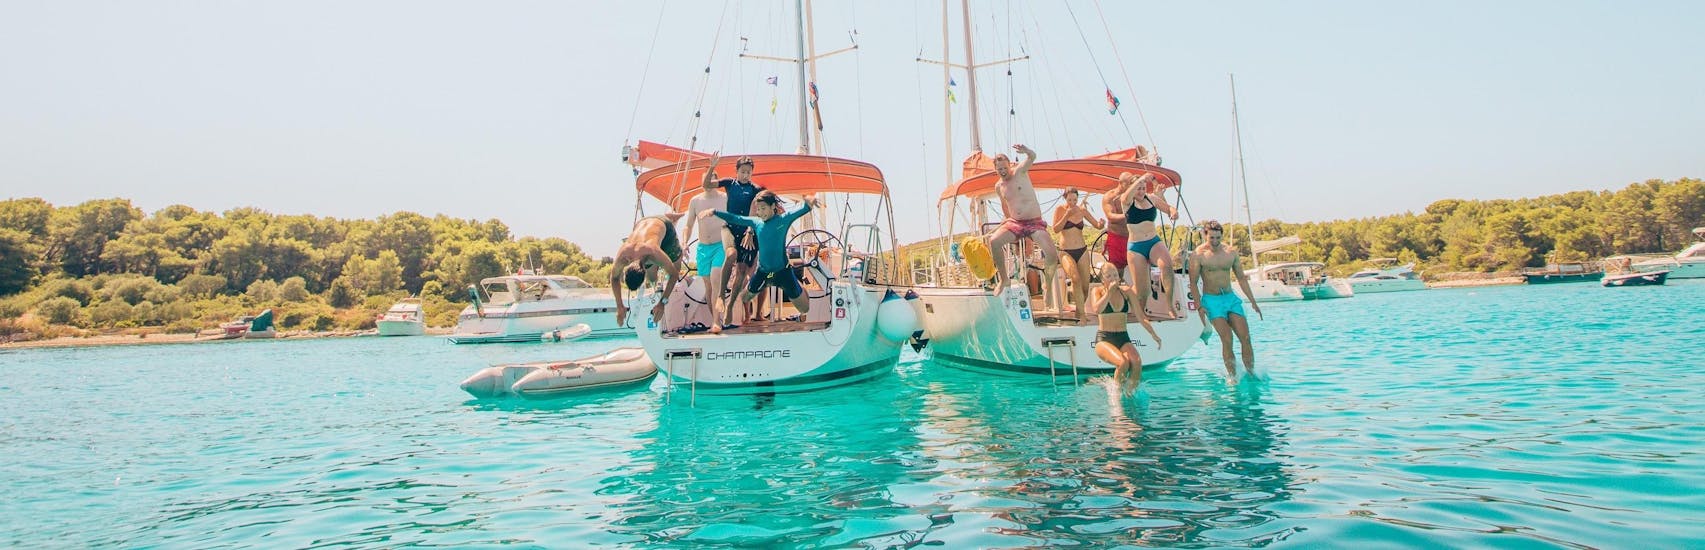 Yacht während des privaten halbtägigen Segeltrips um Zadar The Day Sail